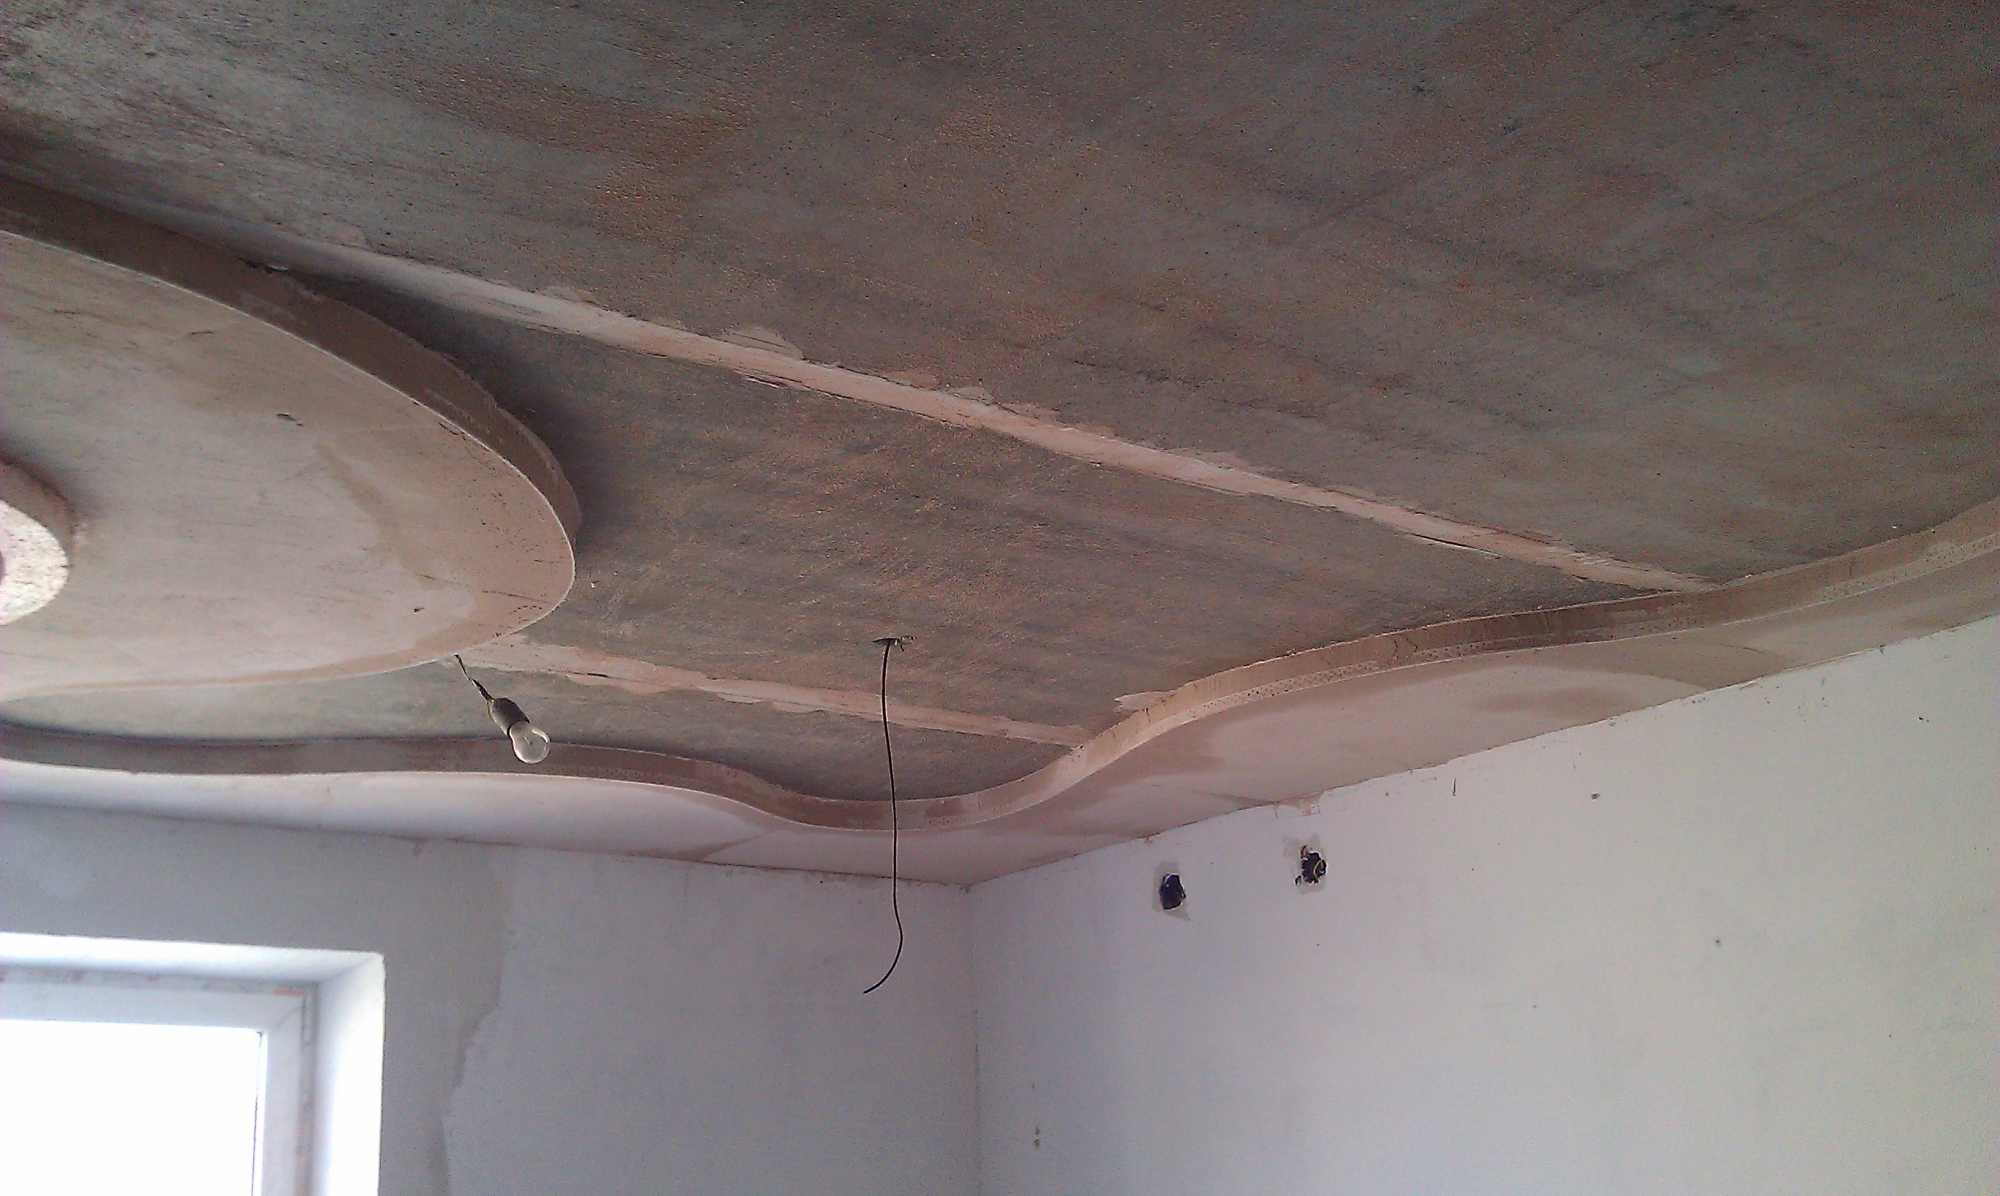 Ремонт потолка своими руками в квартире: инструкция как отремонтировать, видео и фото